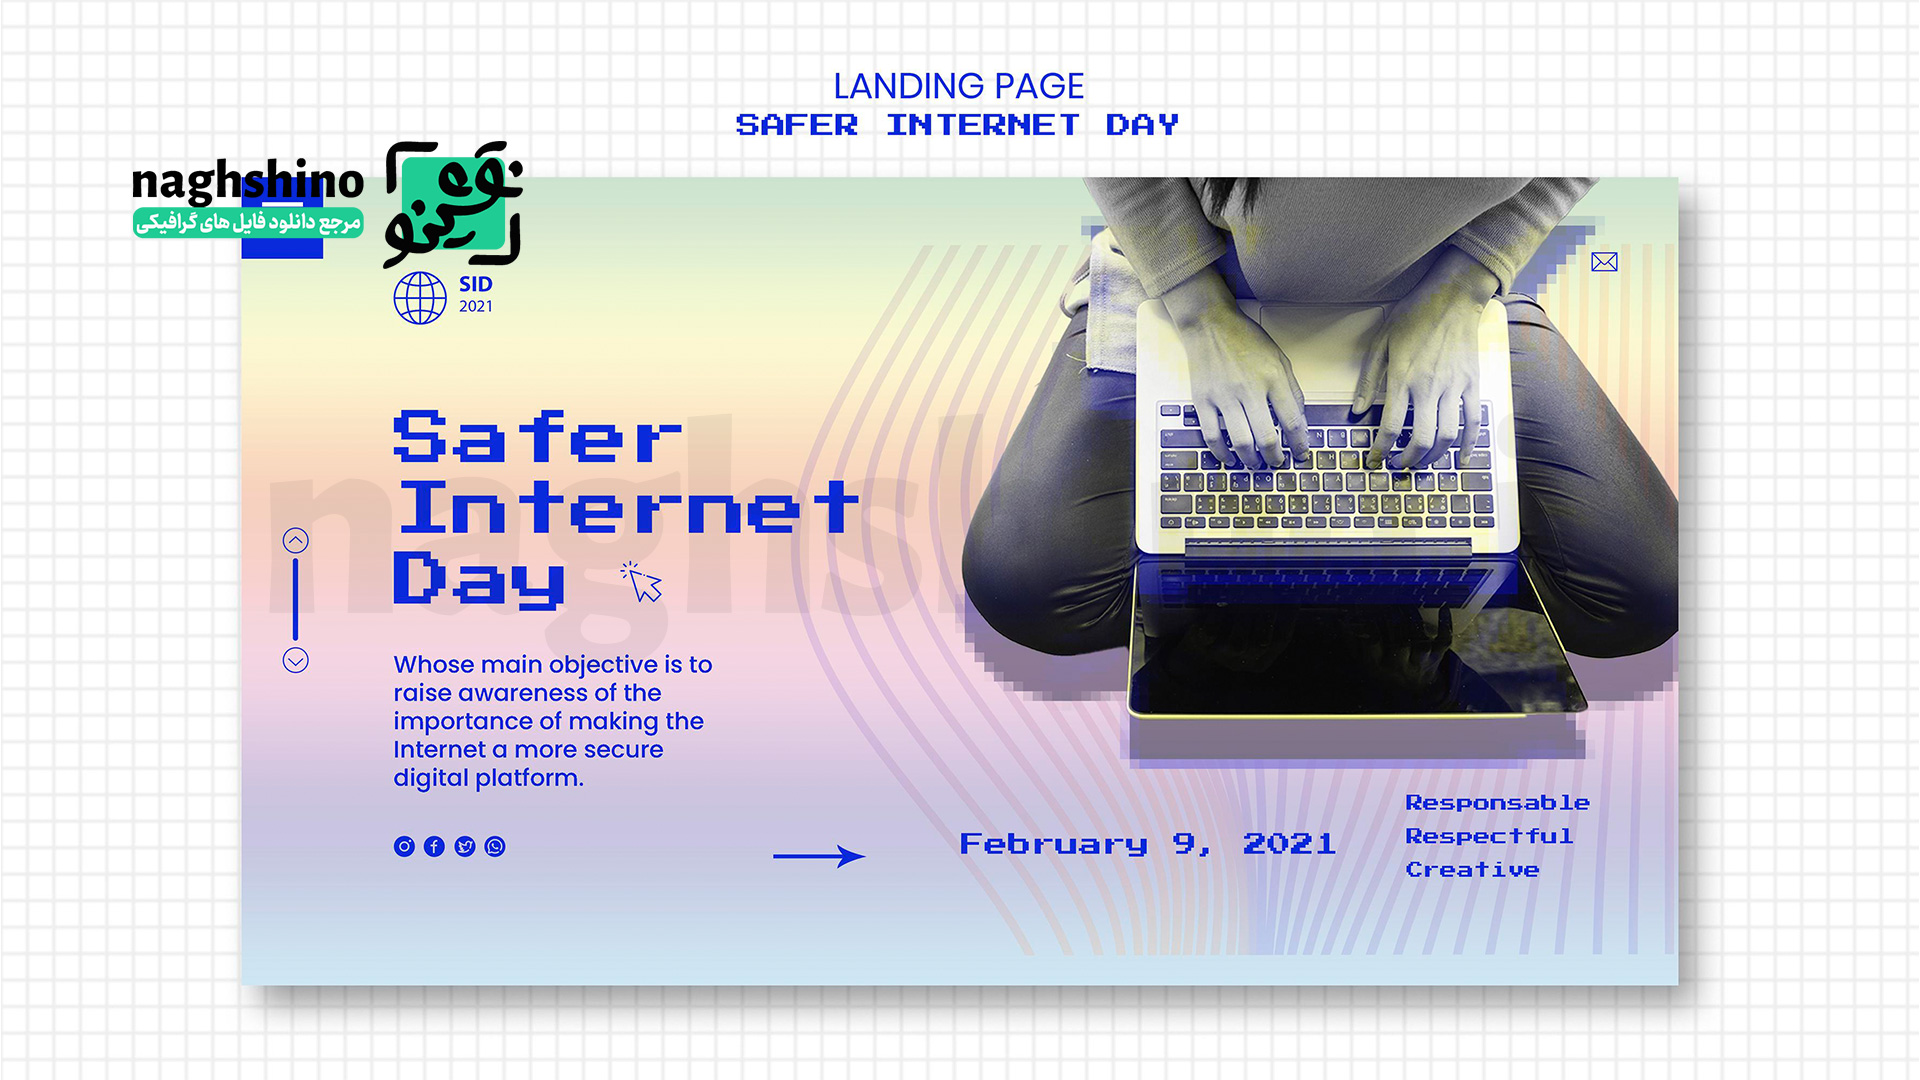 روز اینترنت امن